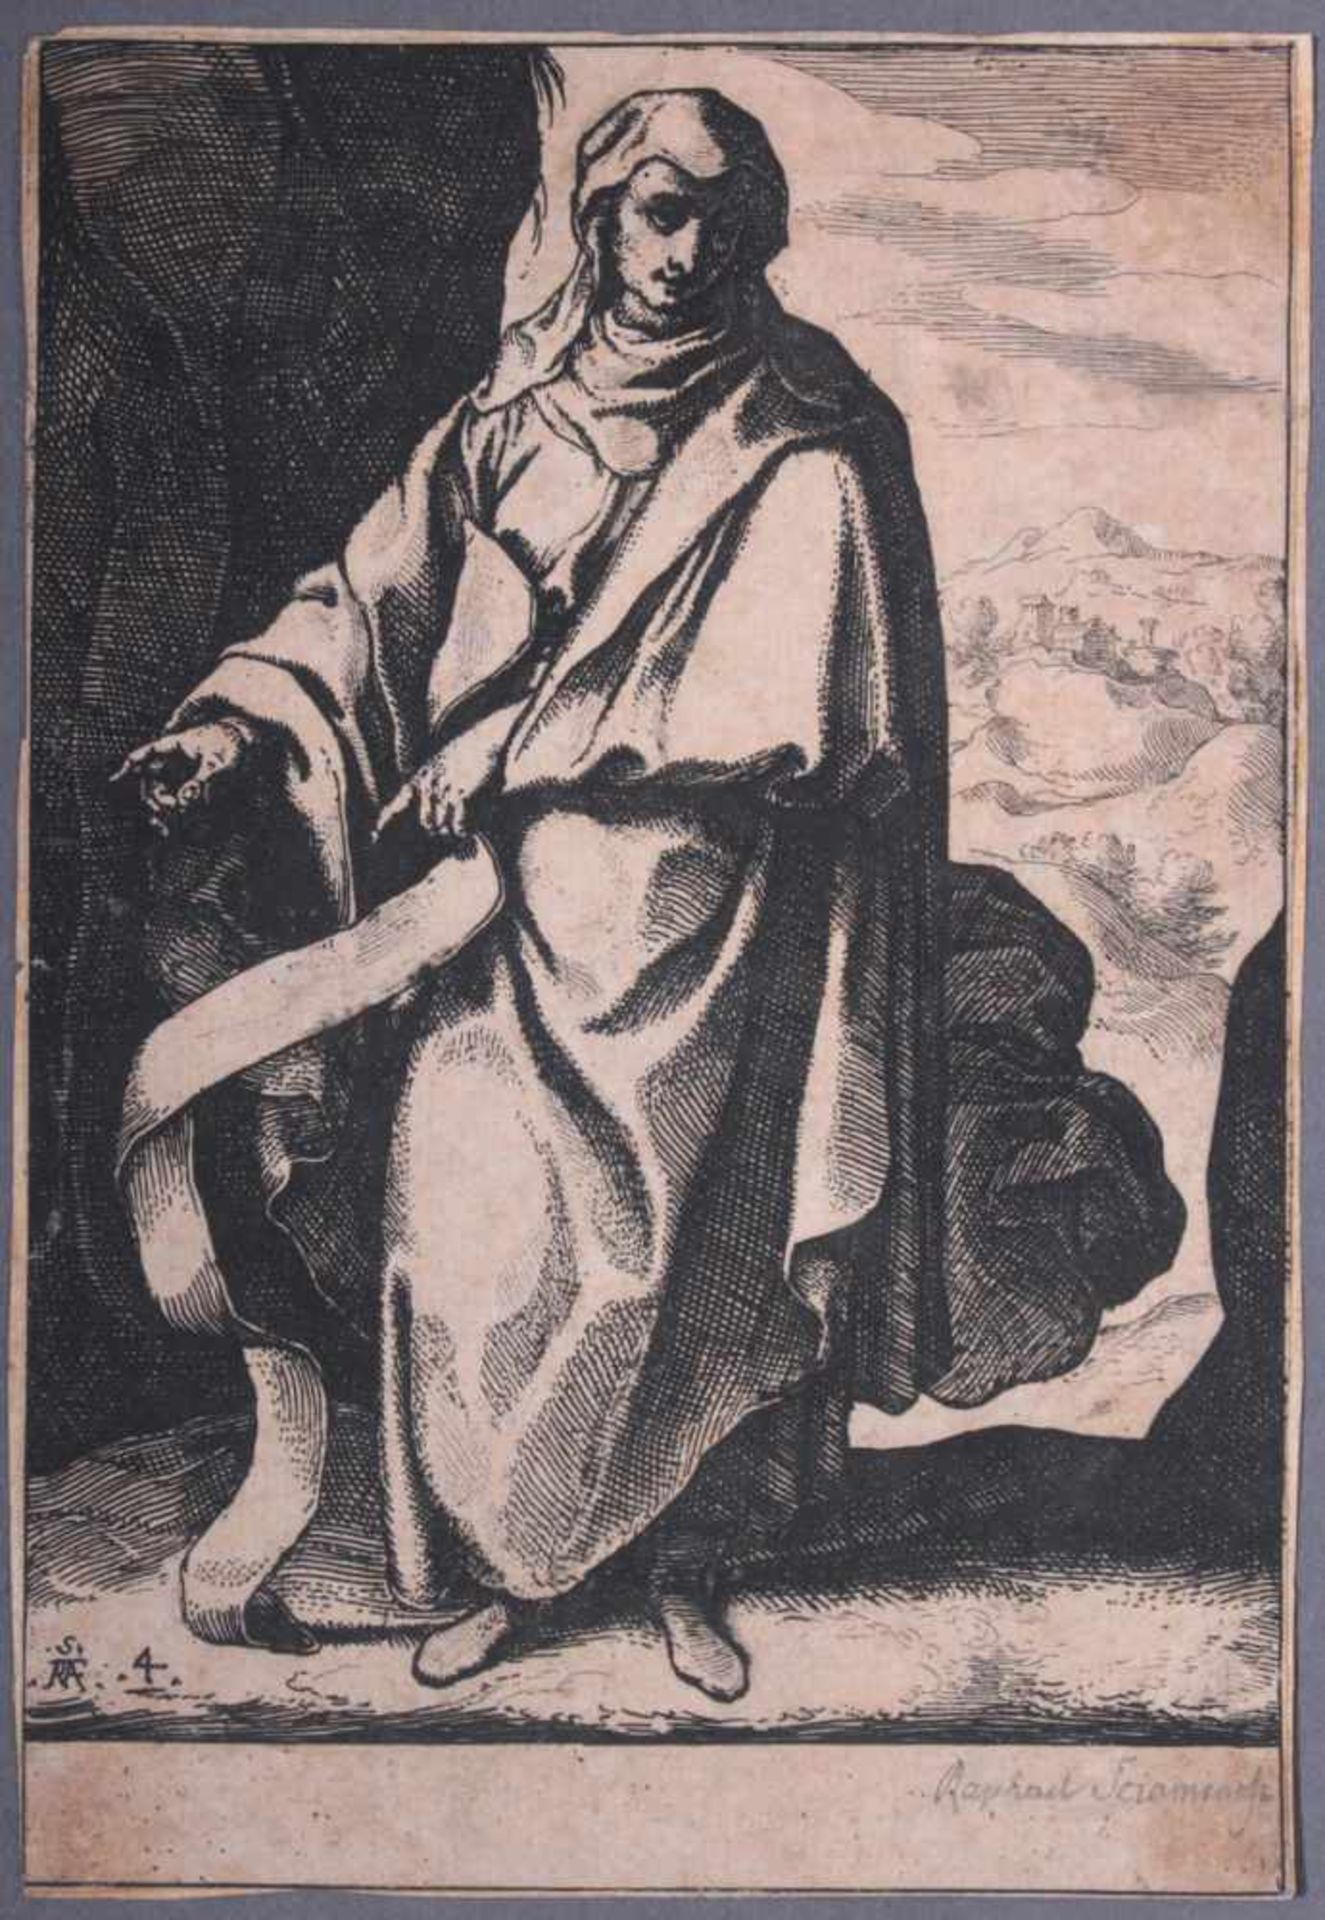 Raffaello Schiaminossi (1572 - 1622)Radierung um 1610, aus der Serie "Die zwölf Propheten", links